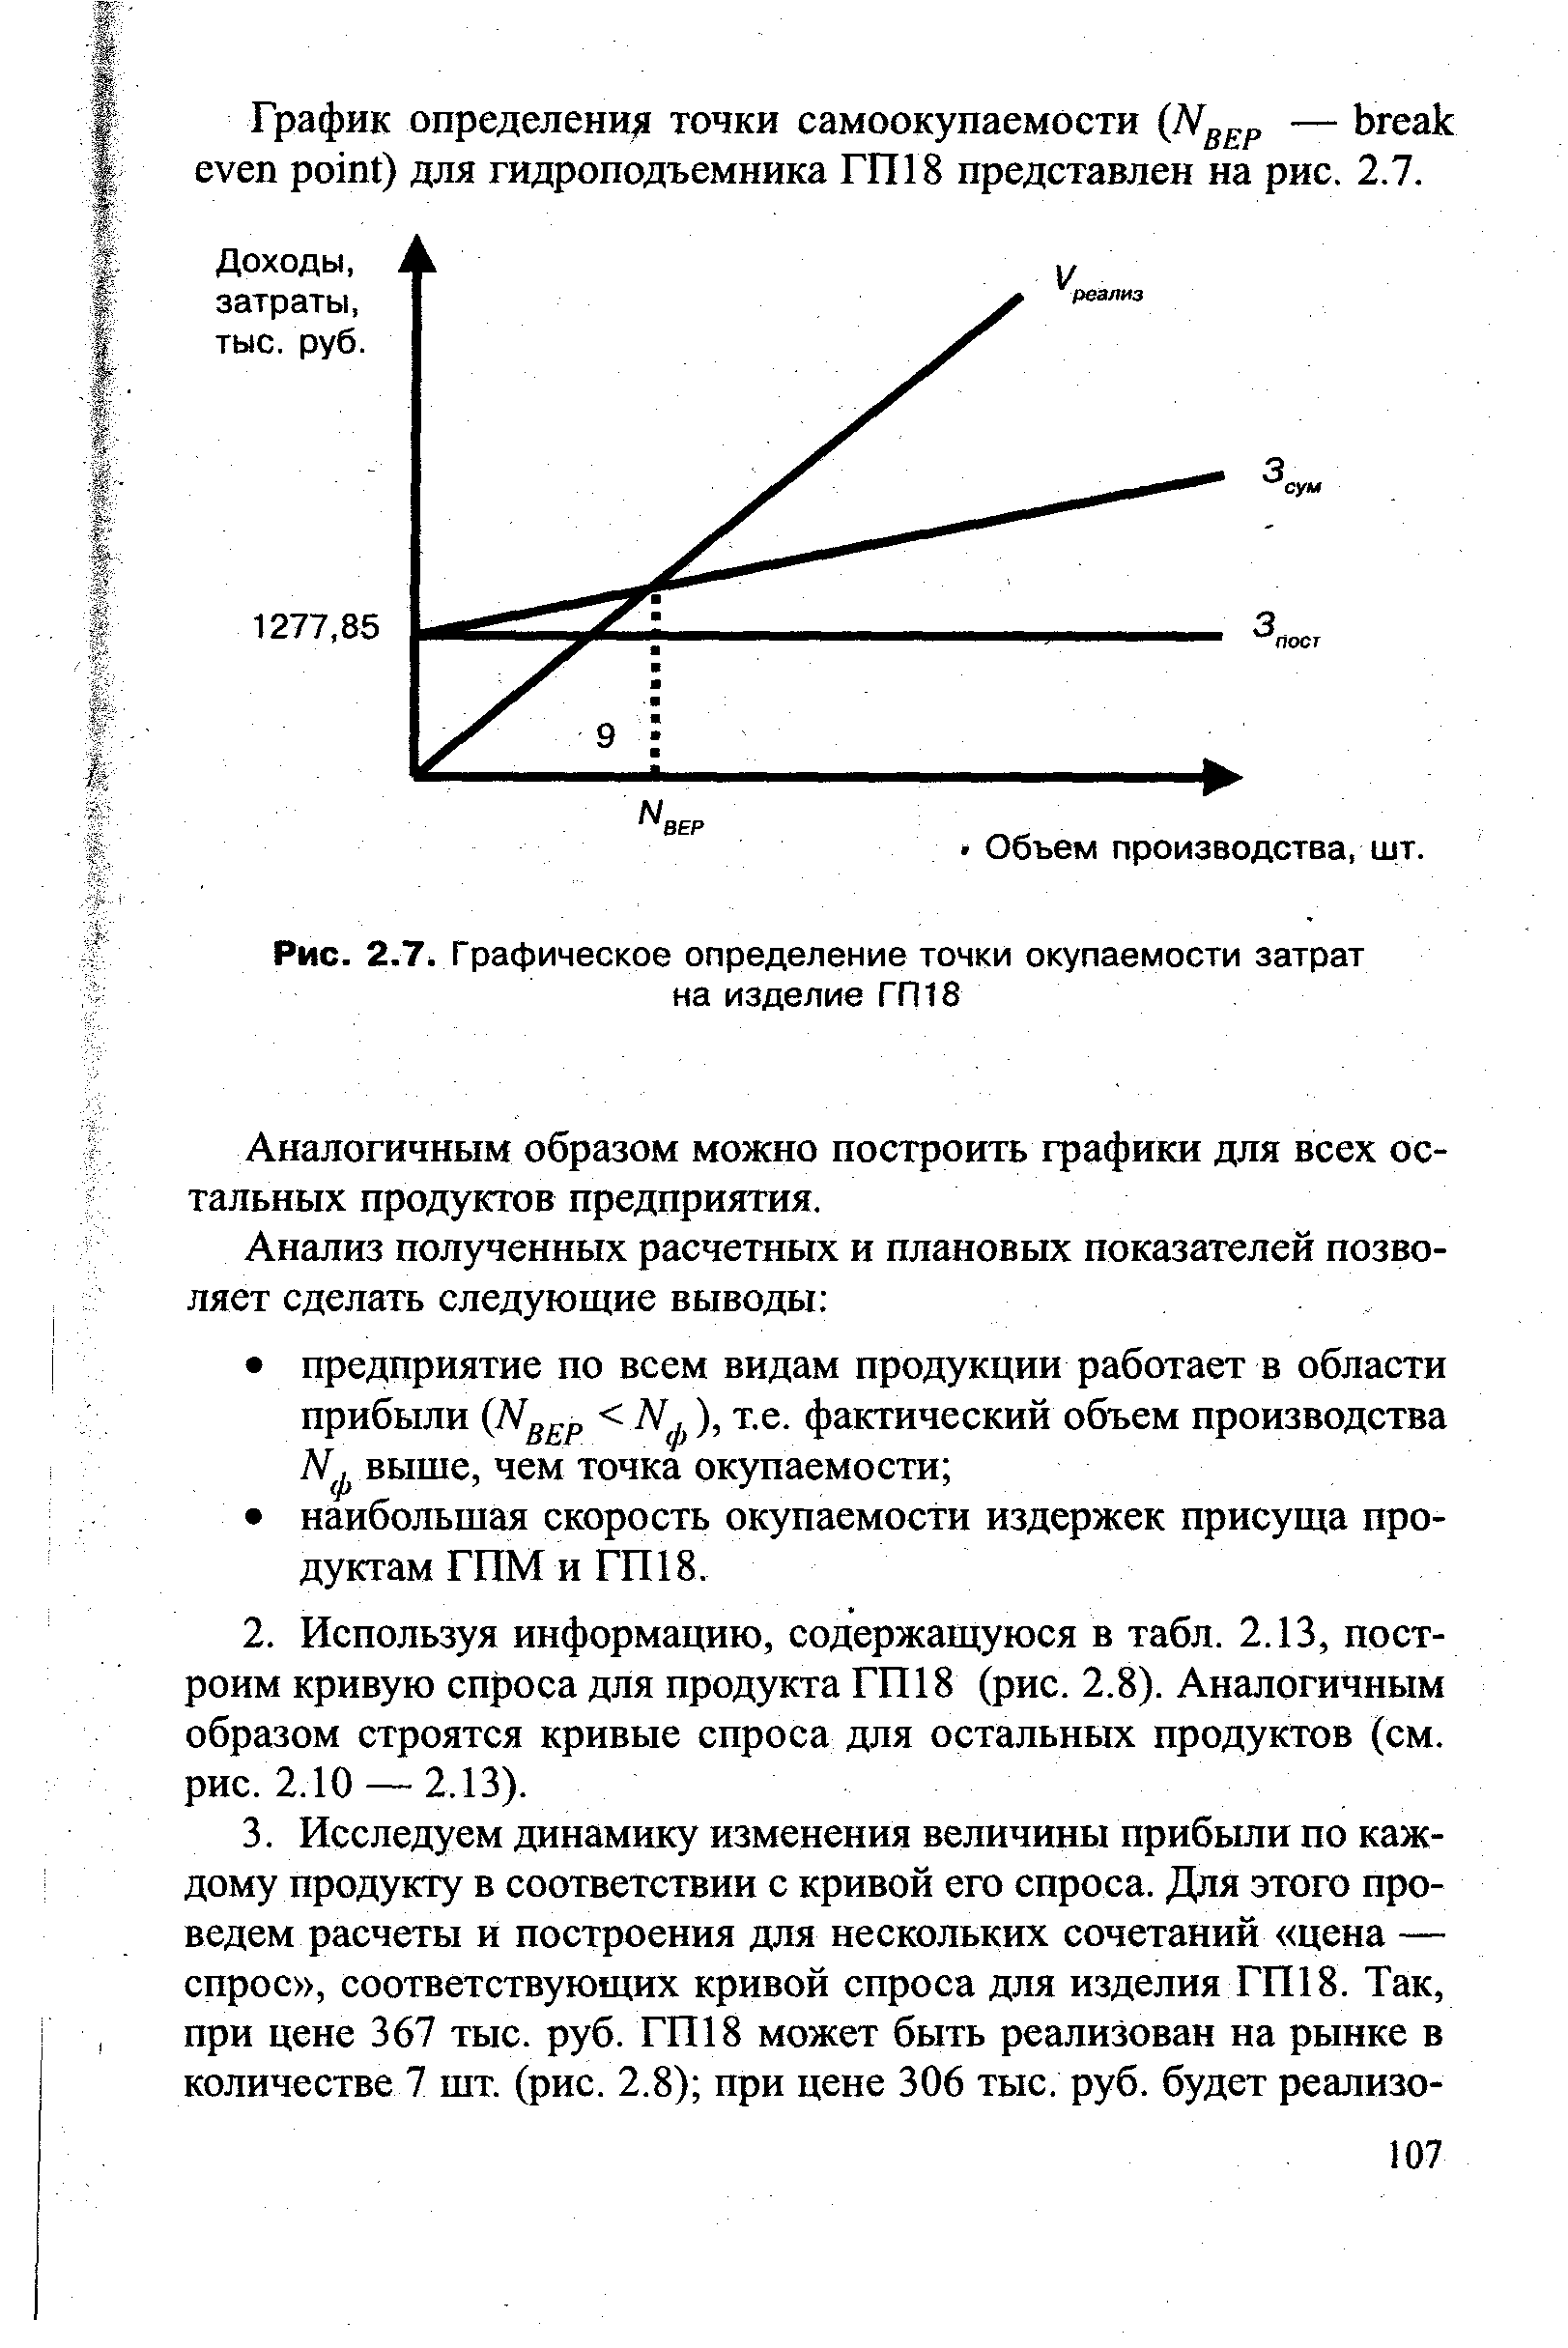 Рис. 2.7, Графическое определение точки окупаемости затрат на изделие ГП18
